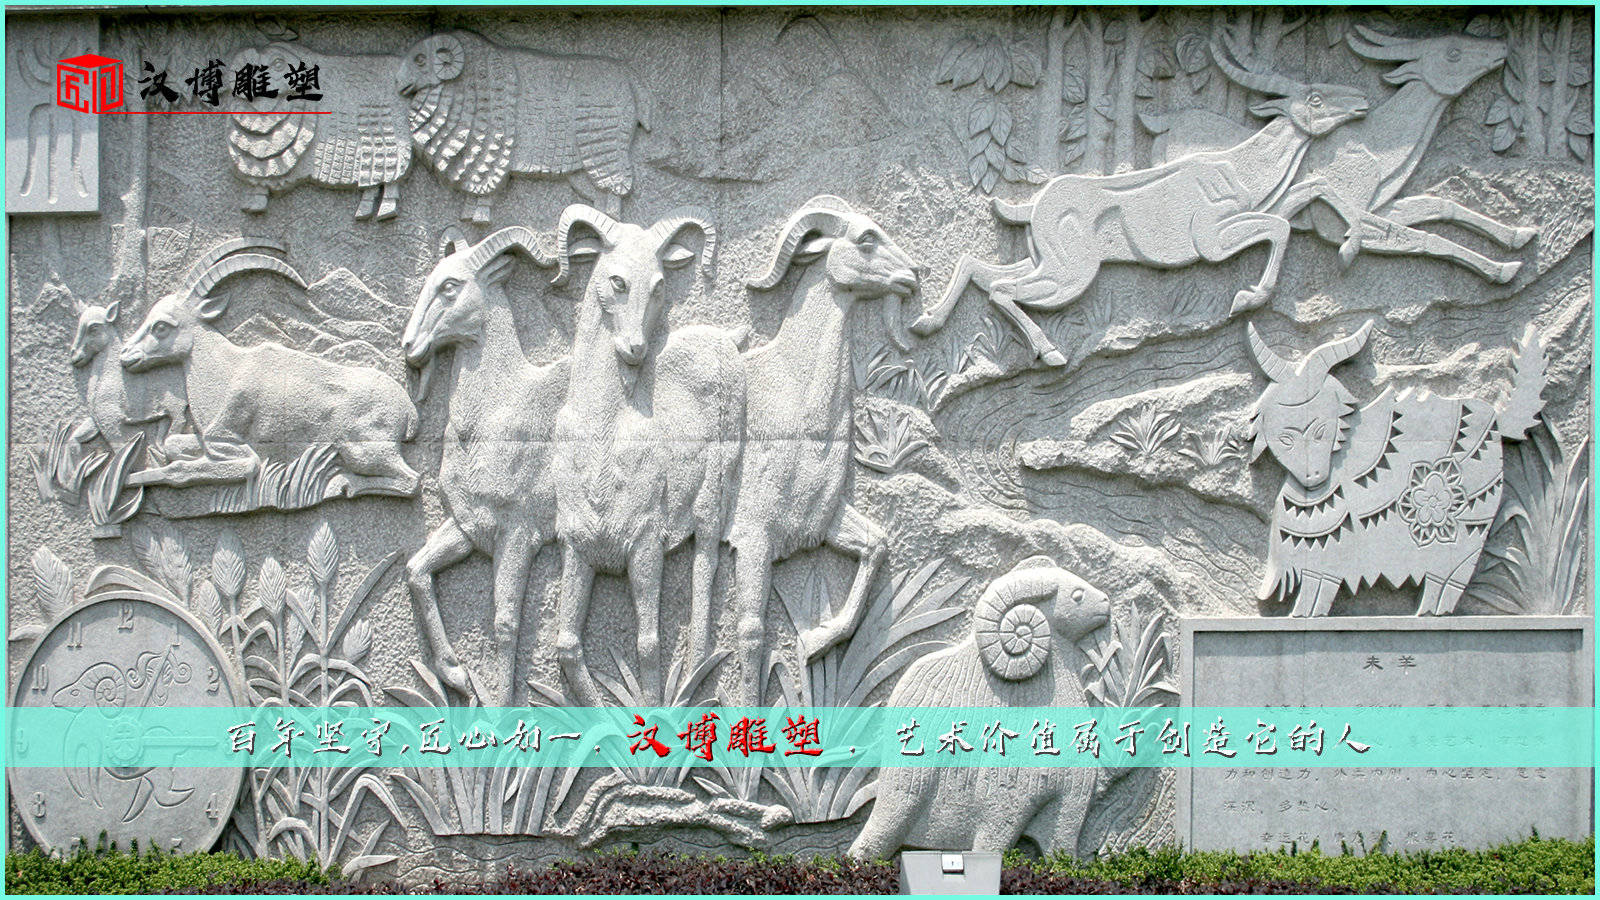 动物主题浮雕,羊雕像,公园景观雕塑